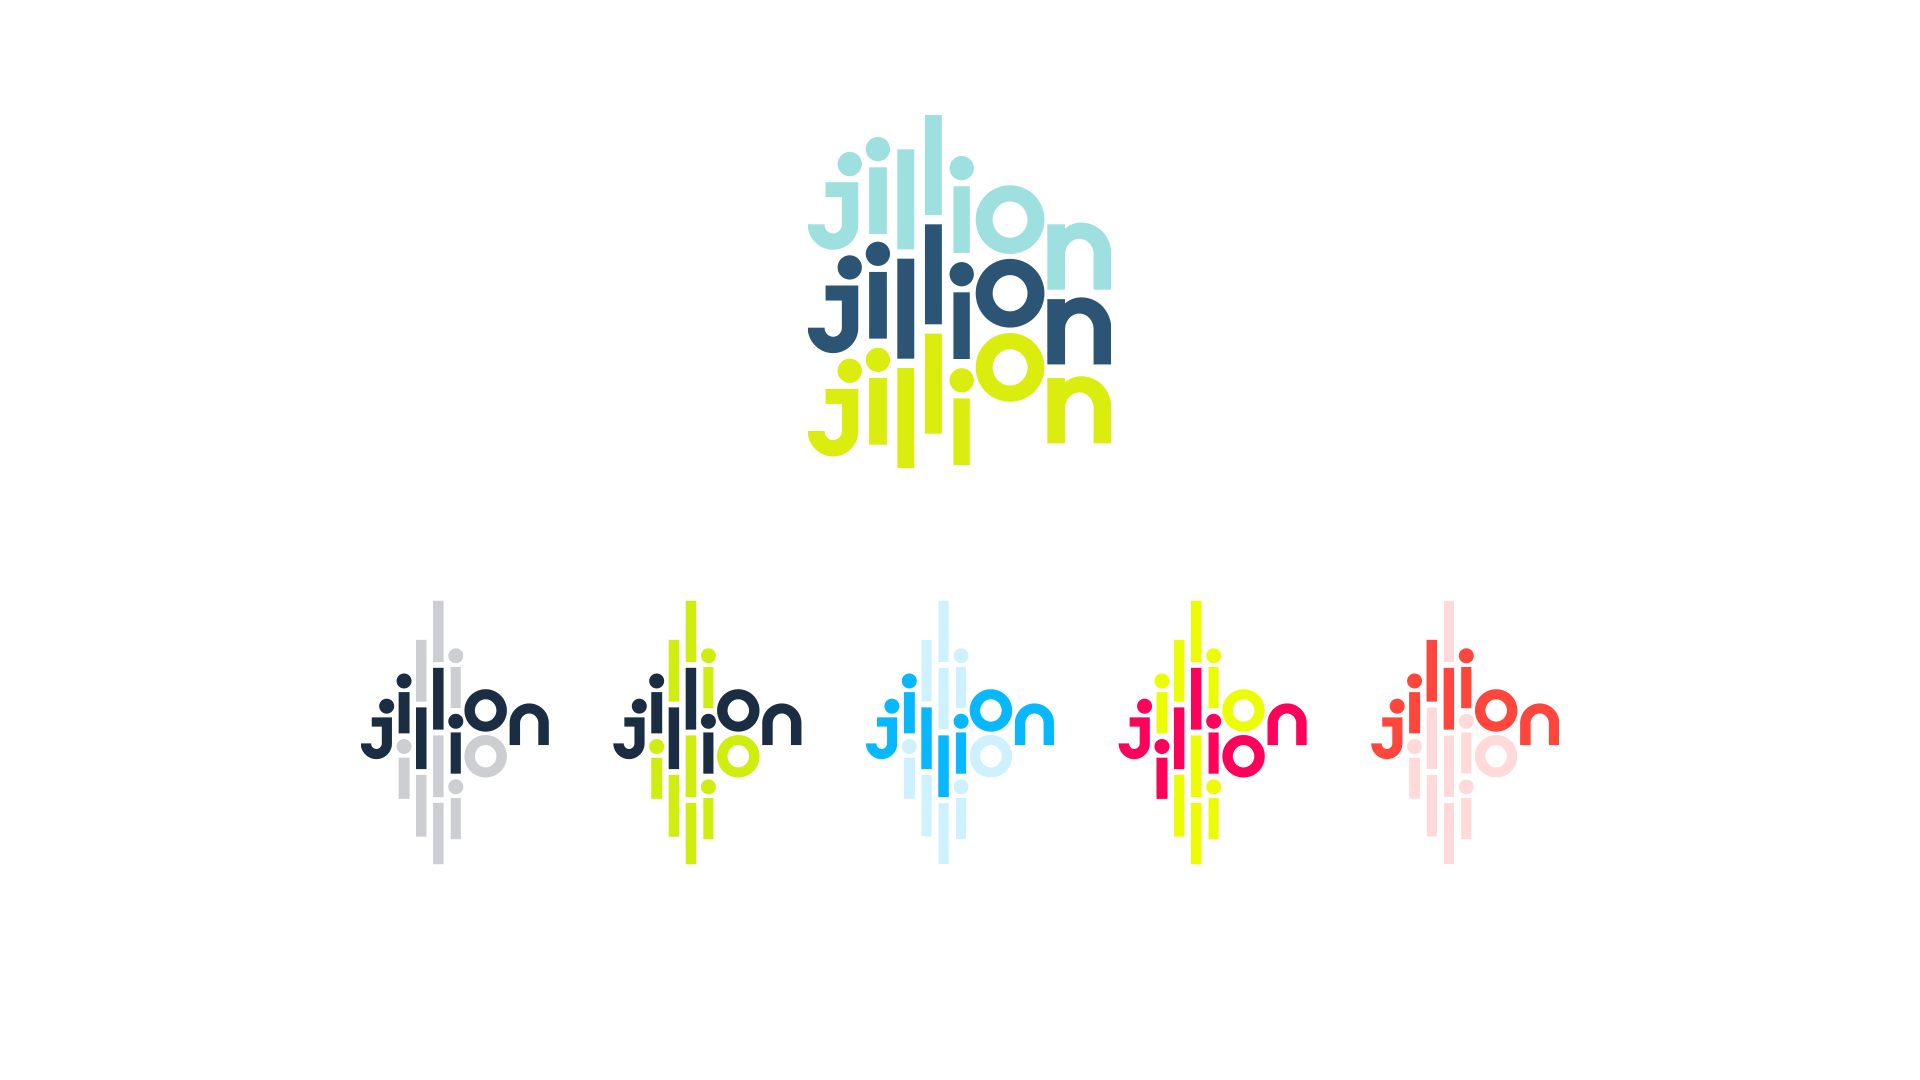 jillionslide-7